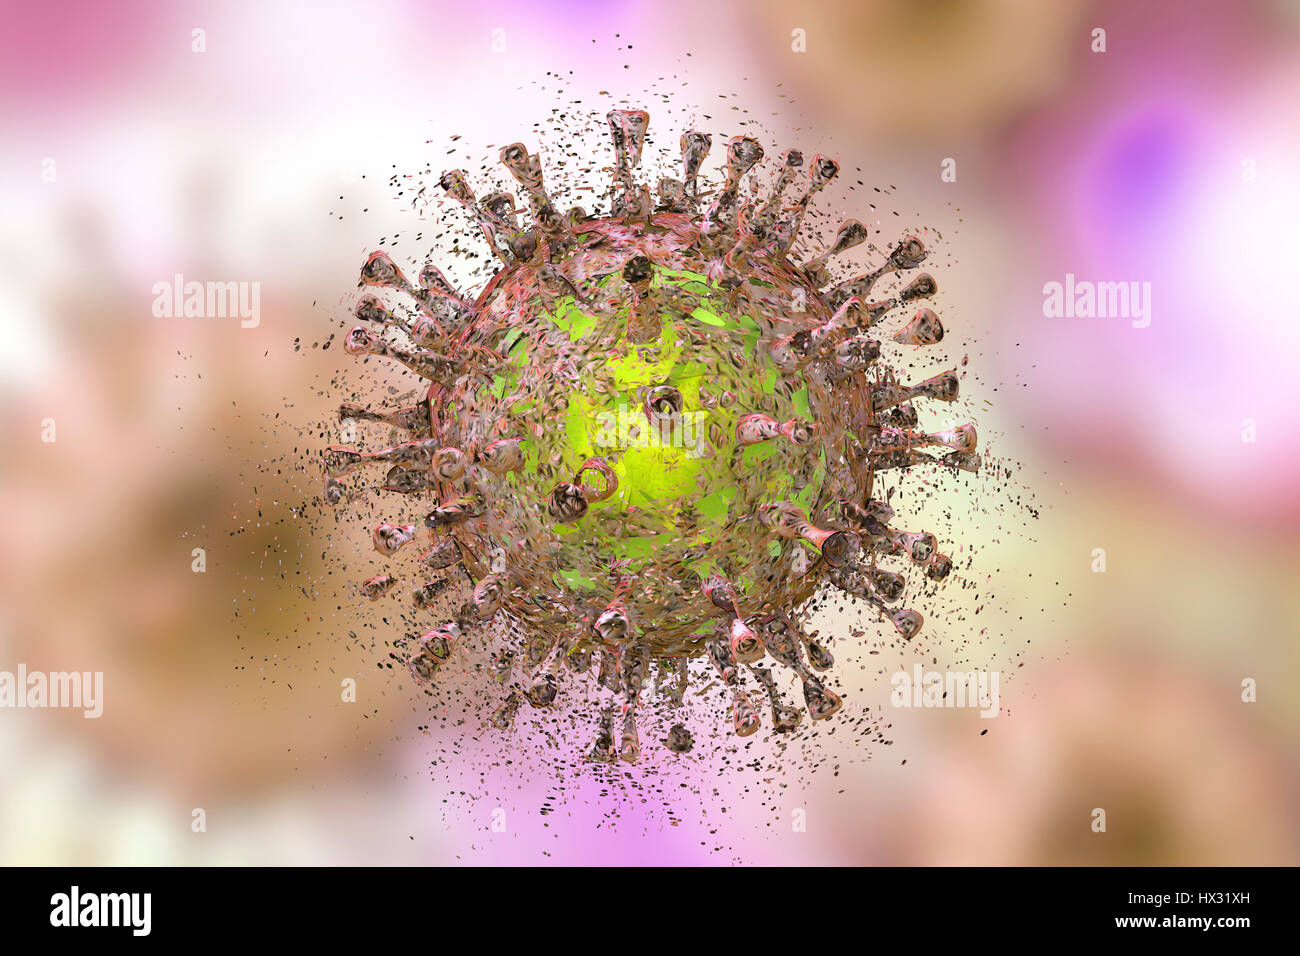 La destruction du cytomégalovirus humain (CMVH), illustration de l'ordinateur. Image conceptuelle pour l'infection par le CMVH Traitement et prévention. Le CMVH est membre de la famille des Herpesviridae. Il a un très haut taux d'infection et est l'une des principales causes de maladie dans les nouveau-nés vulnérables et les patients immunodéprimés, mais n'a pas l'habitude de causer la maladie chez les adultes en bonne santé. Banque D'Images